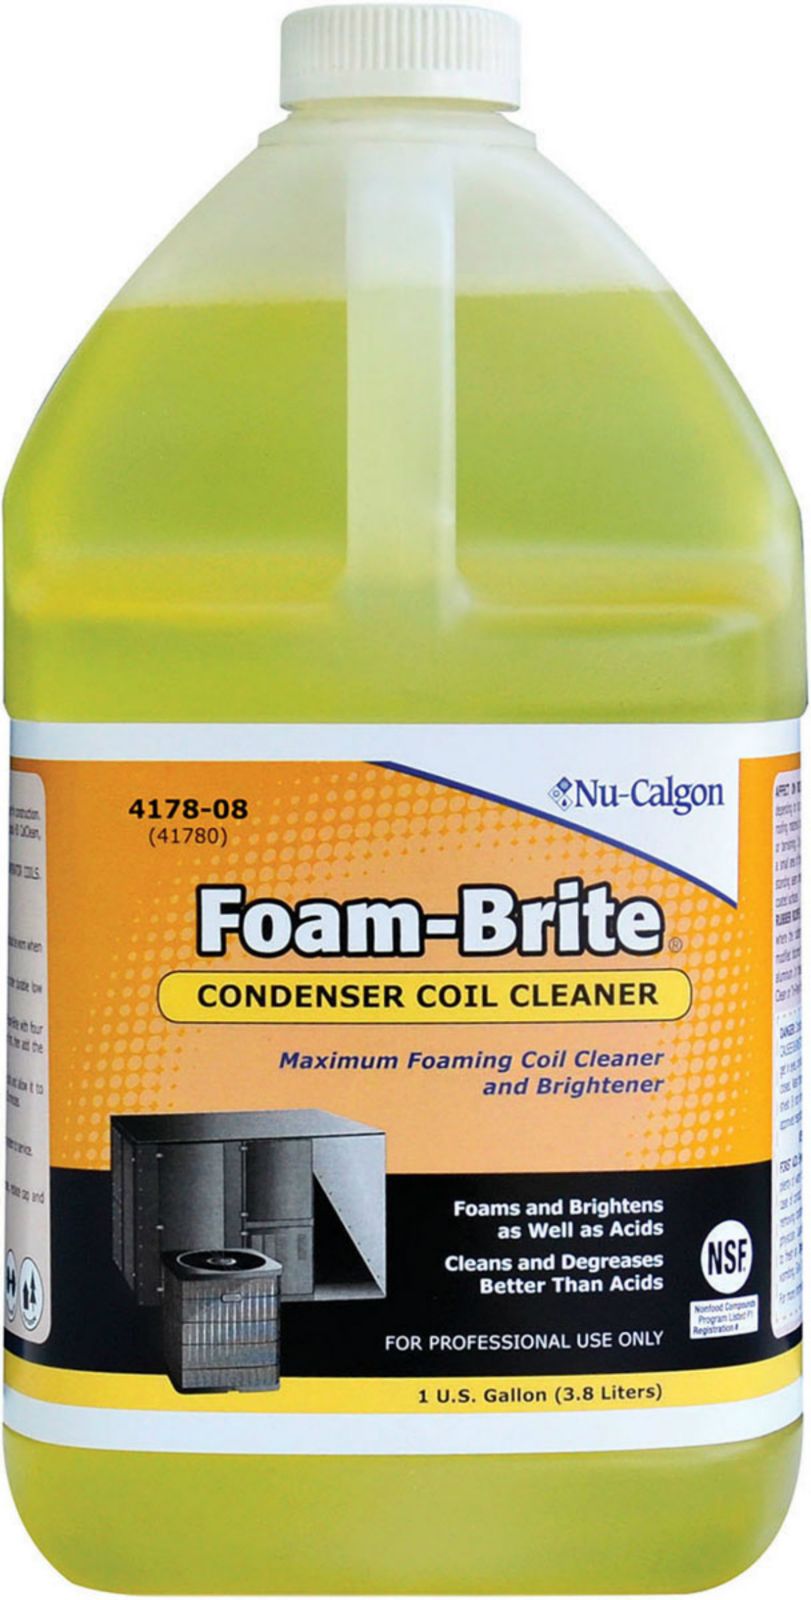 FOAM-BRITE CONDENSER COIL CLEANER 1 GAL FOAMING